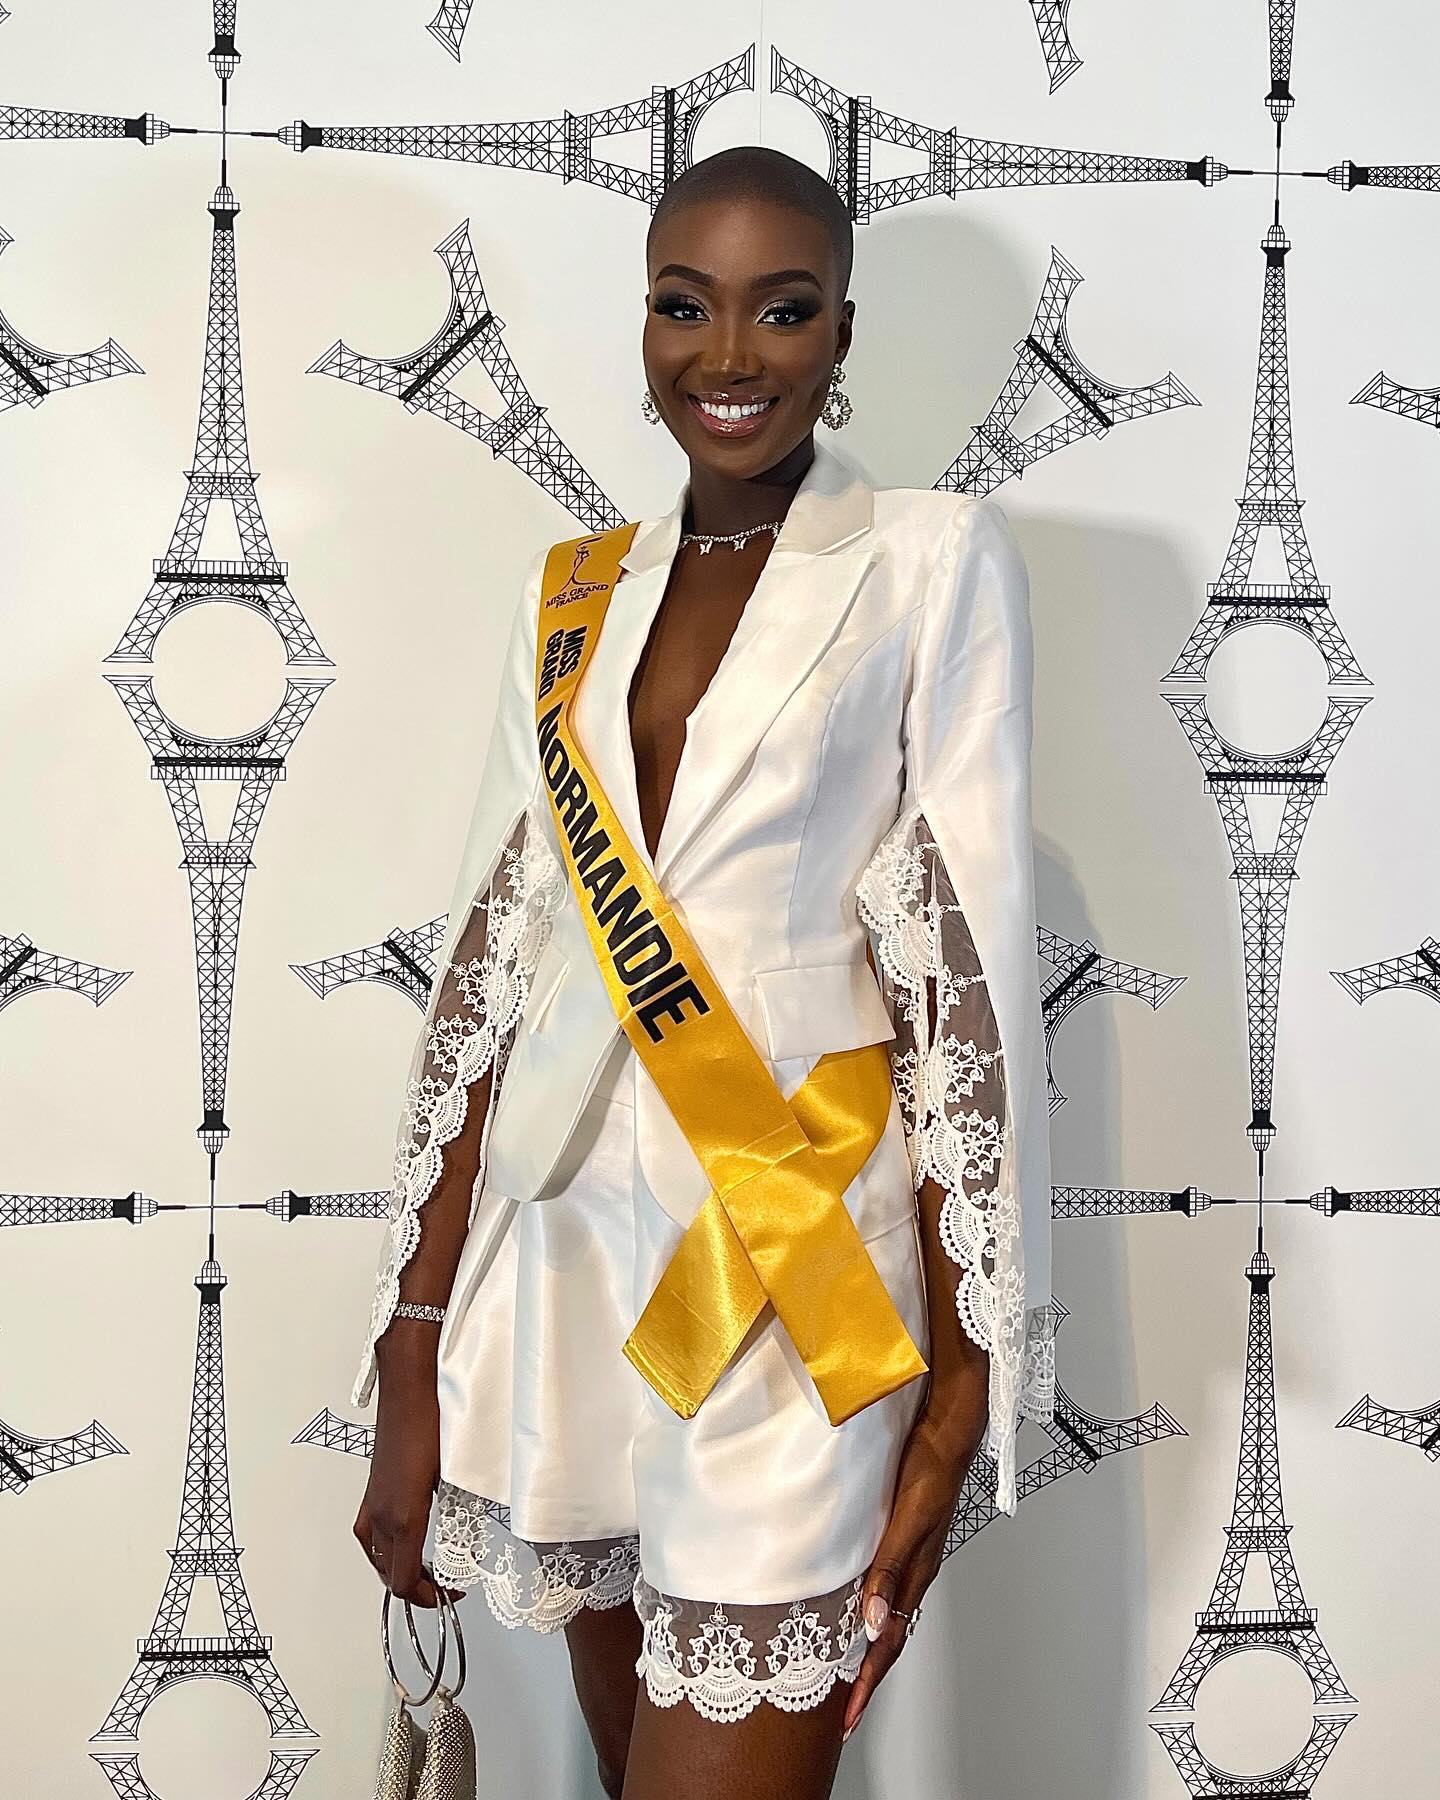 Đến với Miss Grand France 2024, Safiétou Kabengele mang đến hình ảnh năng động, tự tin và lan tỏa những điều tích cực đến phái đẹp. Trước thềm chung kết, Kabengele cho biết dù kết quả thế nào, cô cũng tự hào về bản thân và tất cả tâm huyết đã bỏ ra để hoàn thành chặng đua